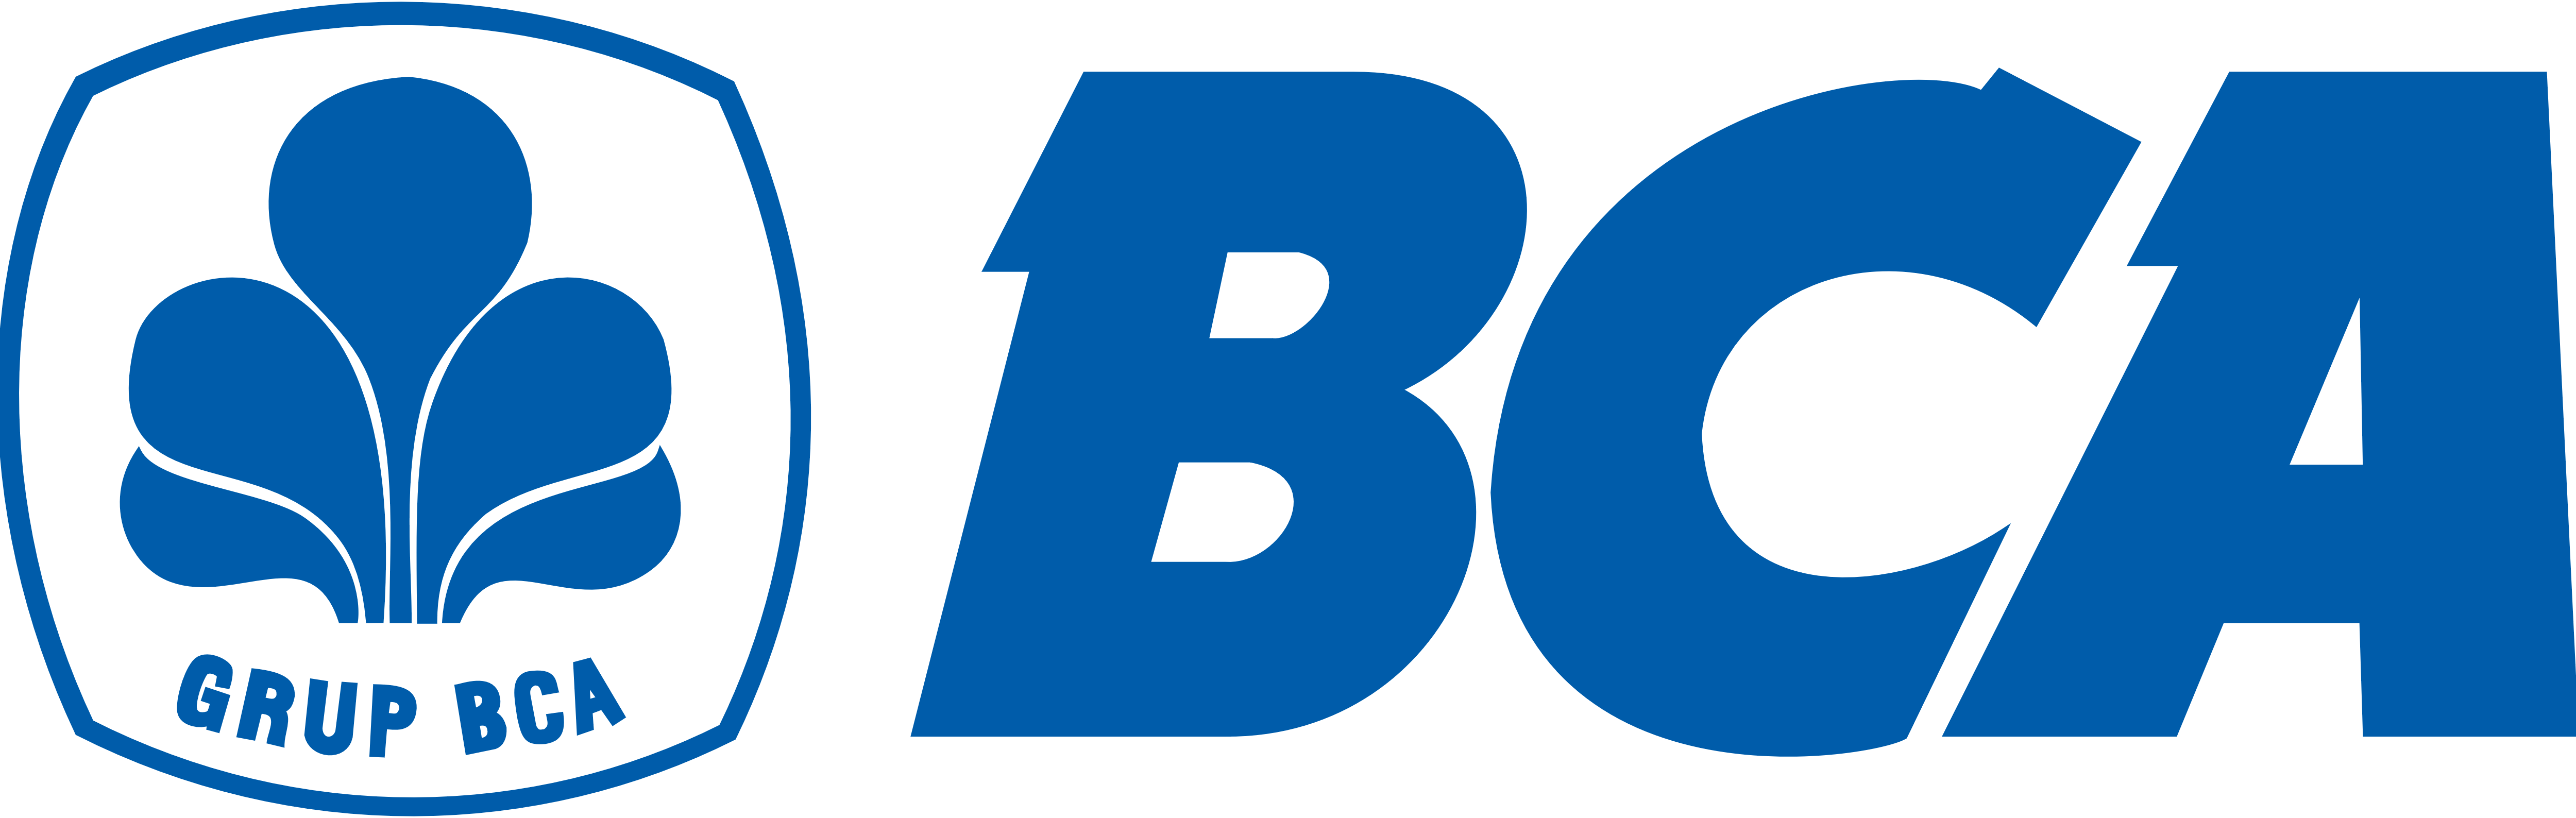 BCA (Bank Central Asia) â€“ Logos Download